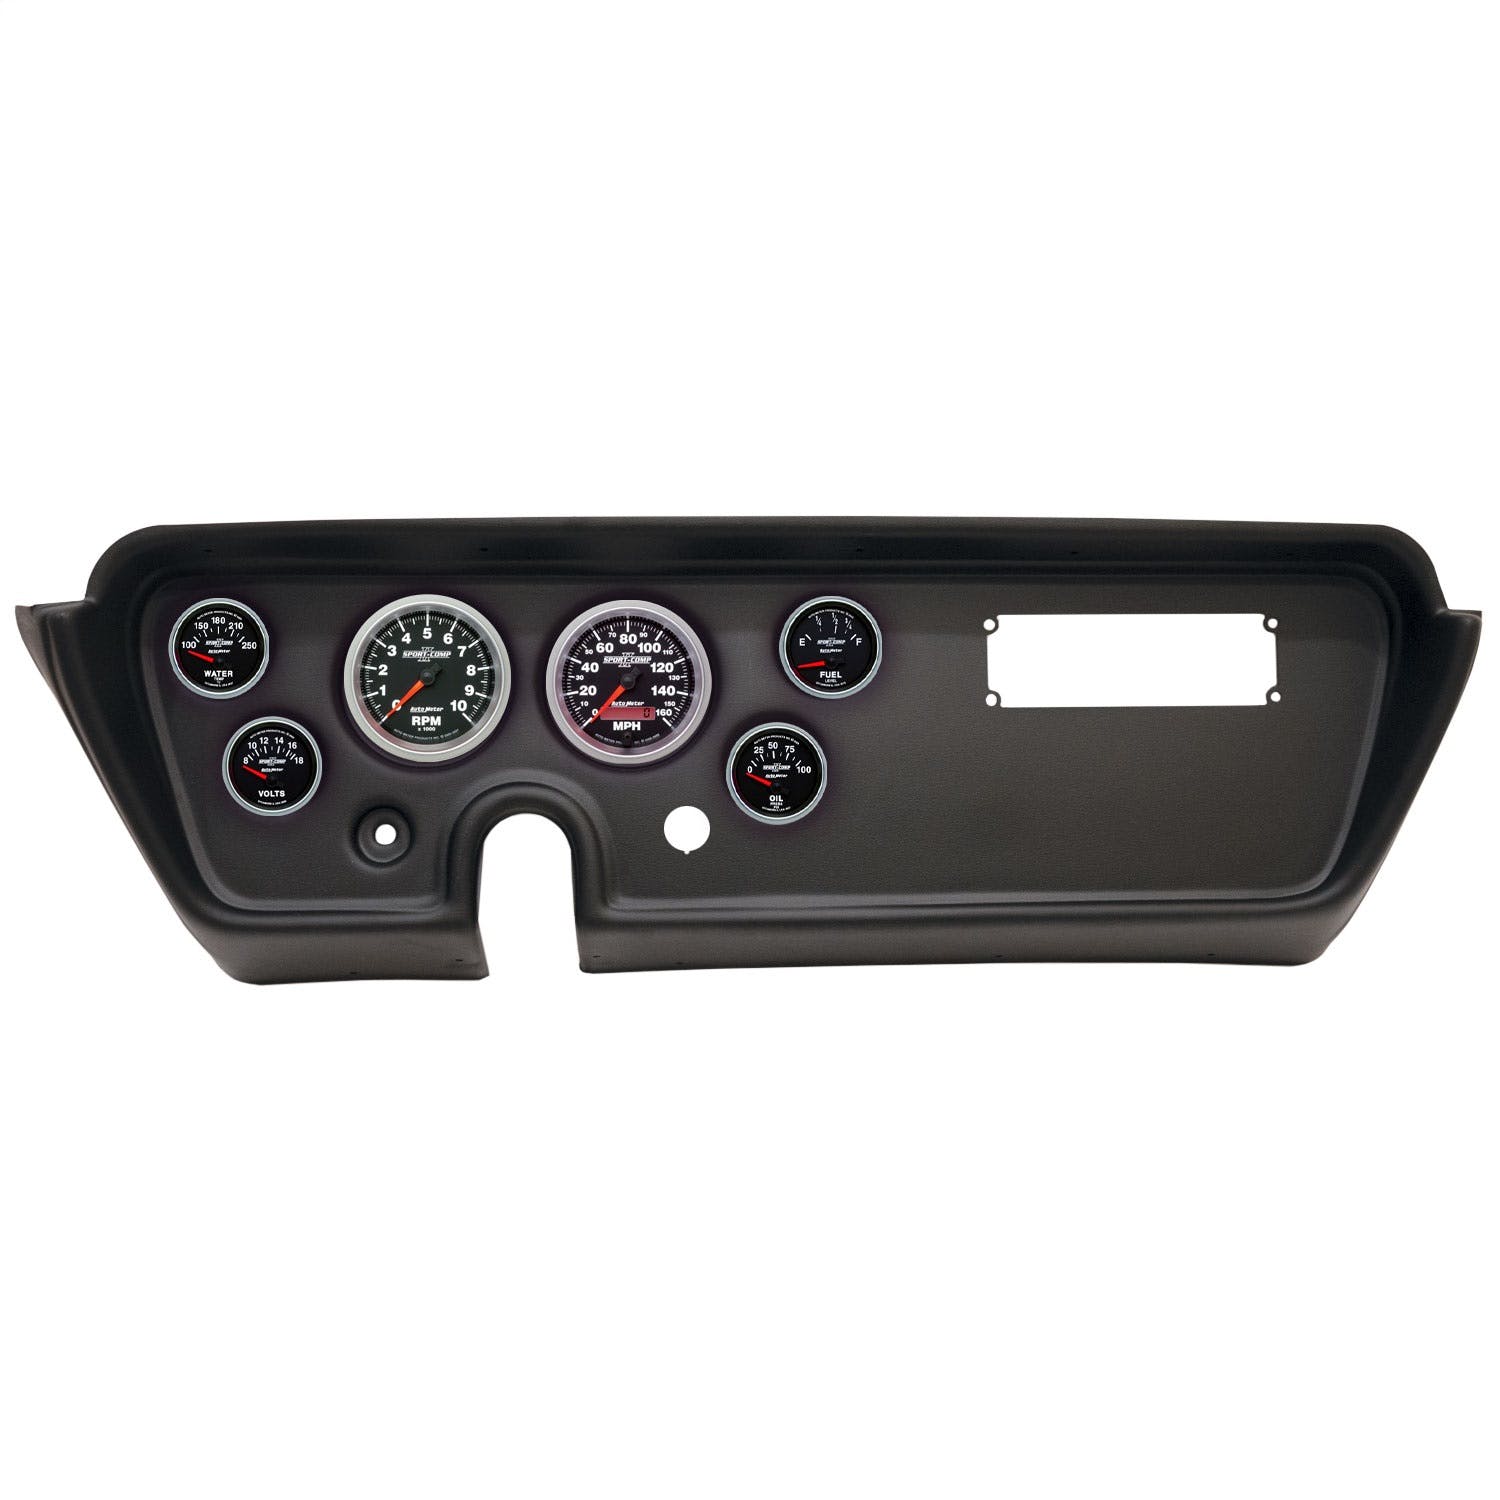 AutoMeter Products 2113-12 6 Gauge Direct-Fit Dash Kit, Pontiac GTO/Lemans 67, Sport-Comp II